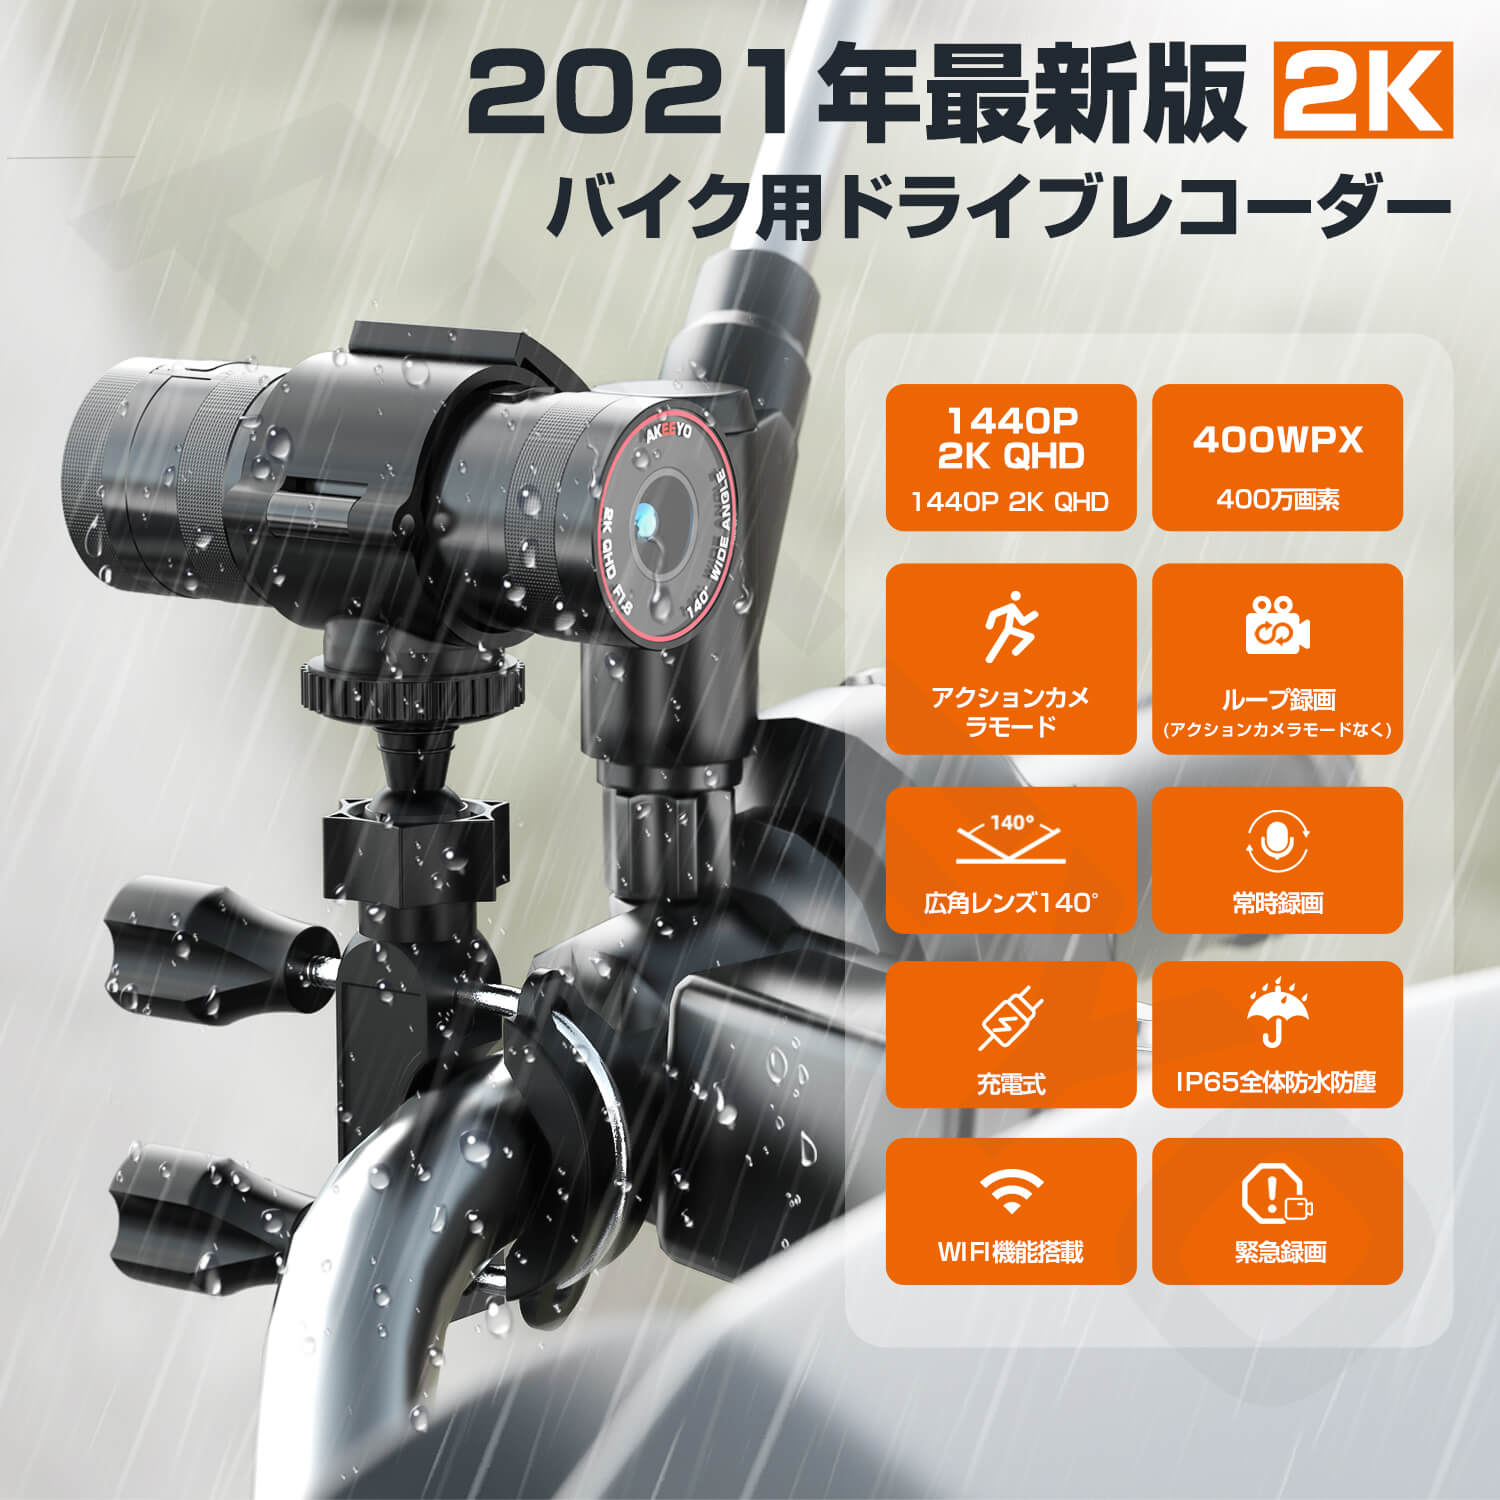 2K QHD 1440P バイク ドライブレコーダー AKY-610 PRO 32GBカード付き WiFi搭載 防水防塵 充電式  アクションカメラモード切替 400万画素 140度広角度